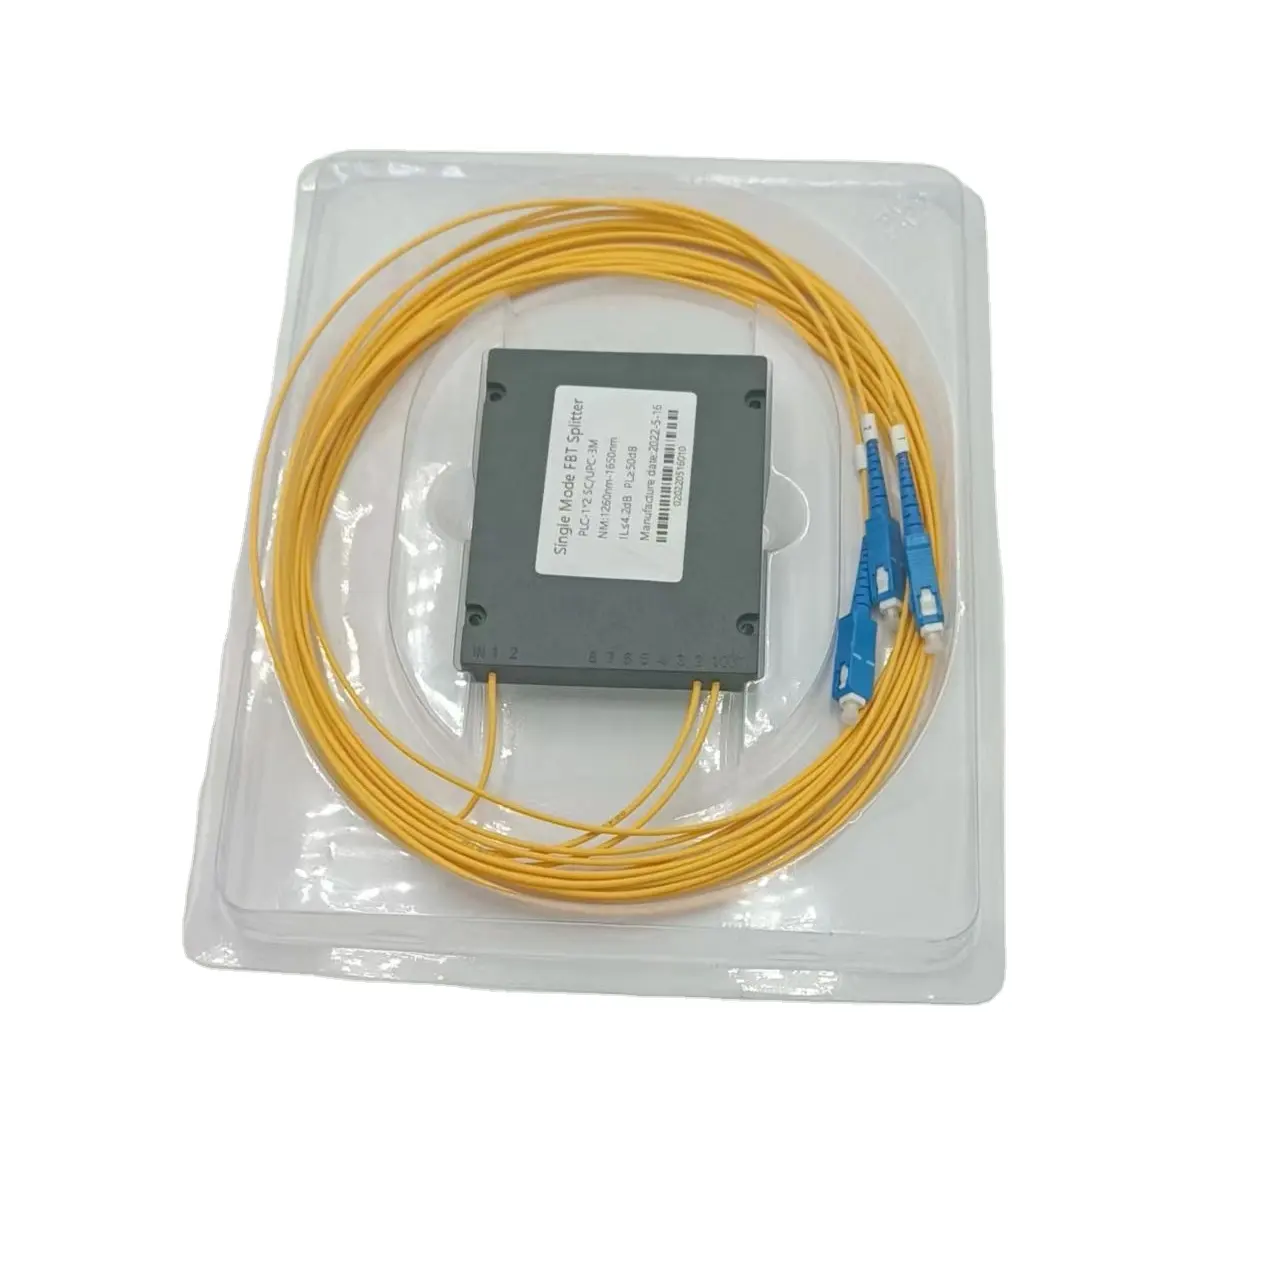 Séparateur de fibre optique G657A1 équipement de fibre optique à pointe d'extrémité de fibre optique 1*2 1*4 1*8 1*16 1*32 1*64 séparateur PLC